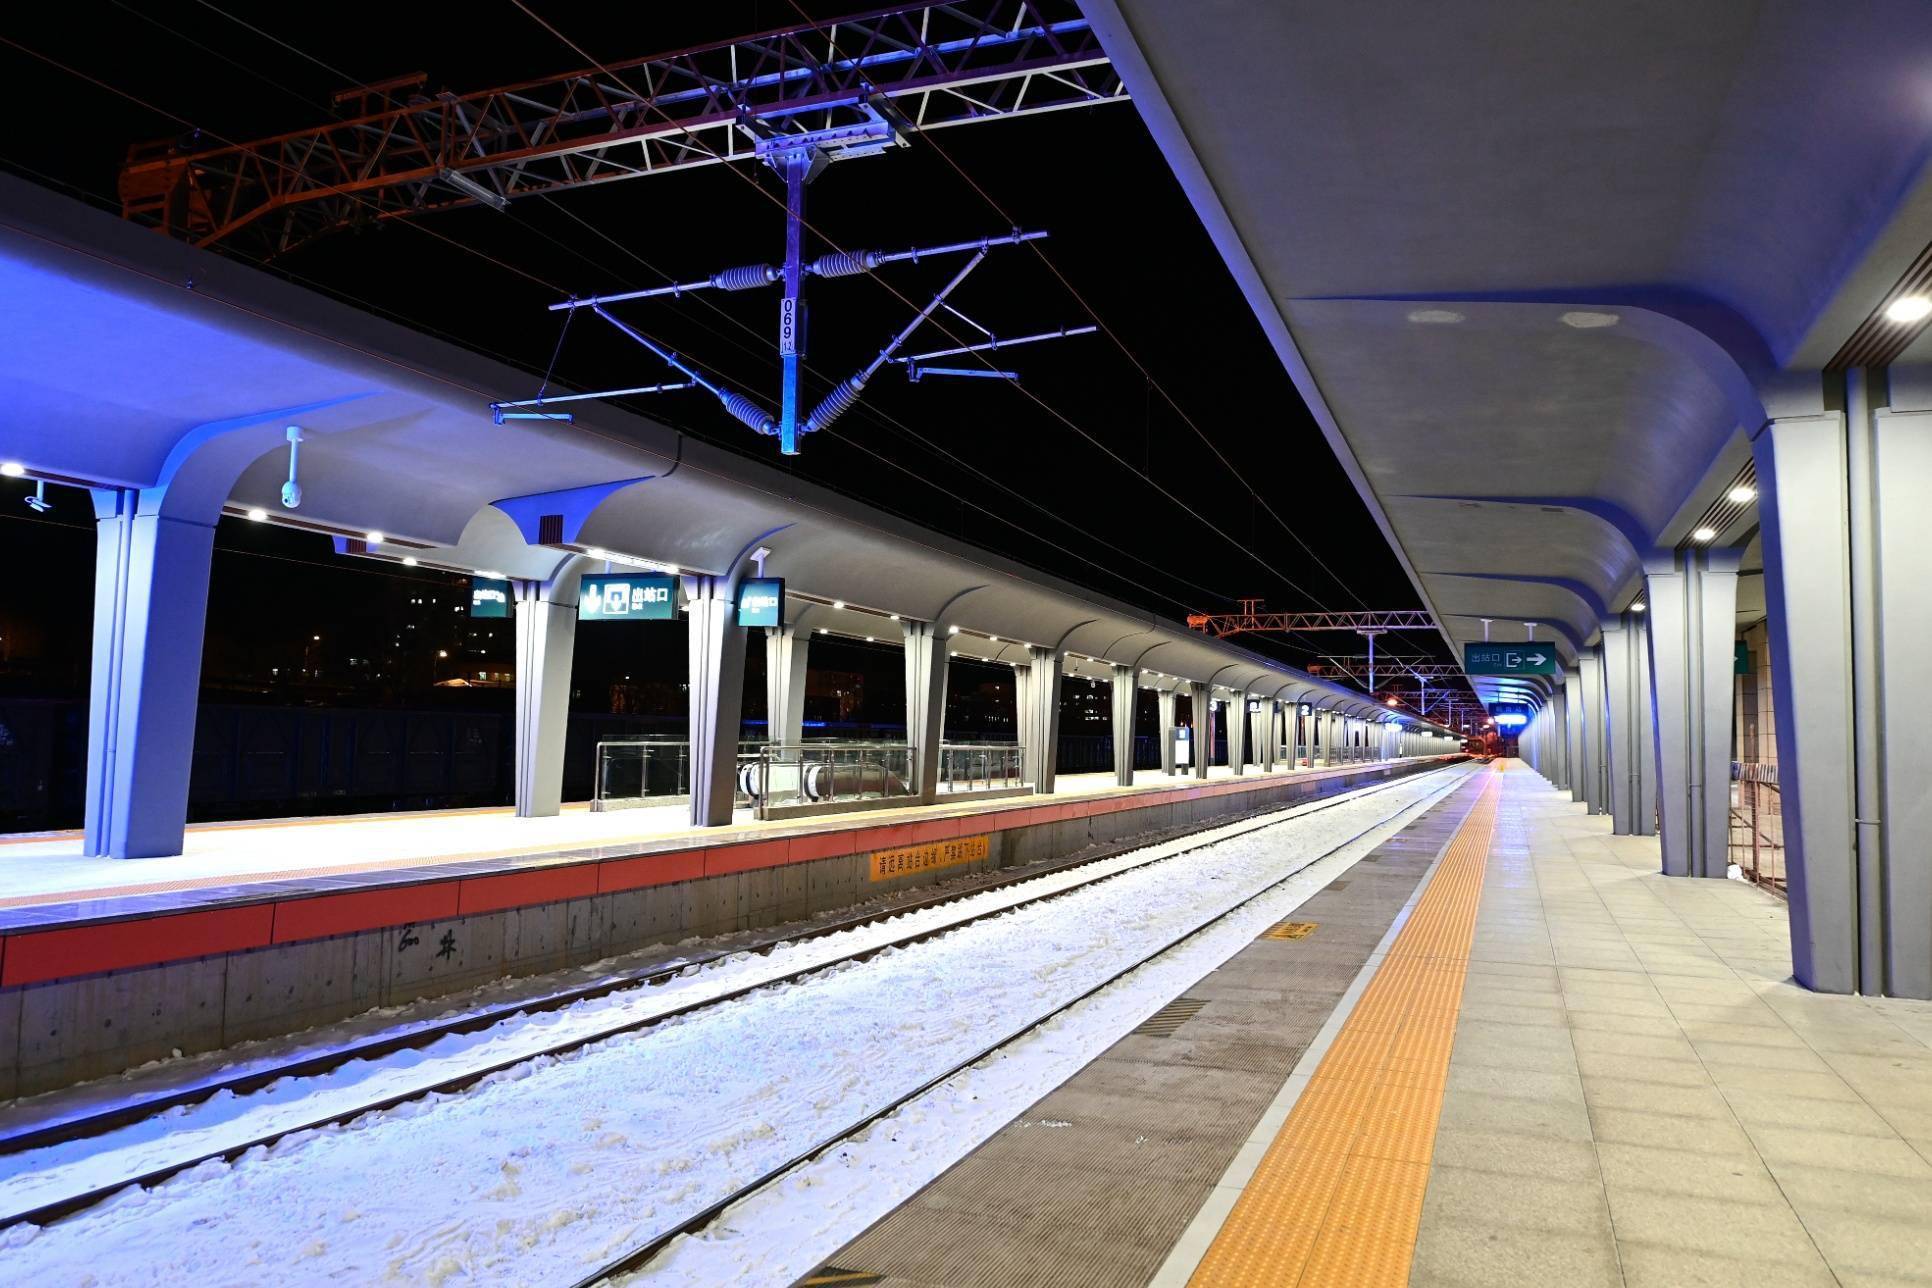 11月30日,佳木斯至鹤岗铁路(以下简称佳鹤铁路)改造工程新建鹤岗站站